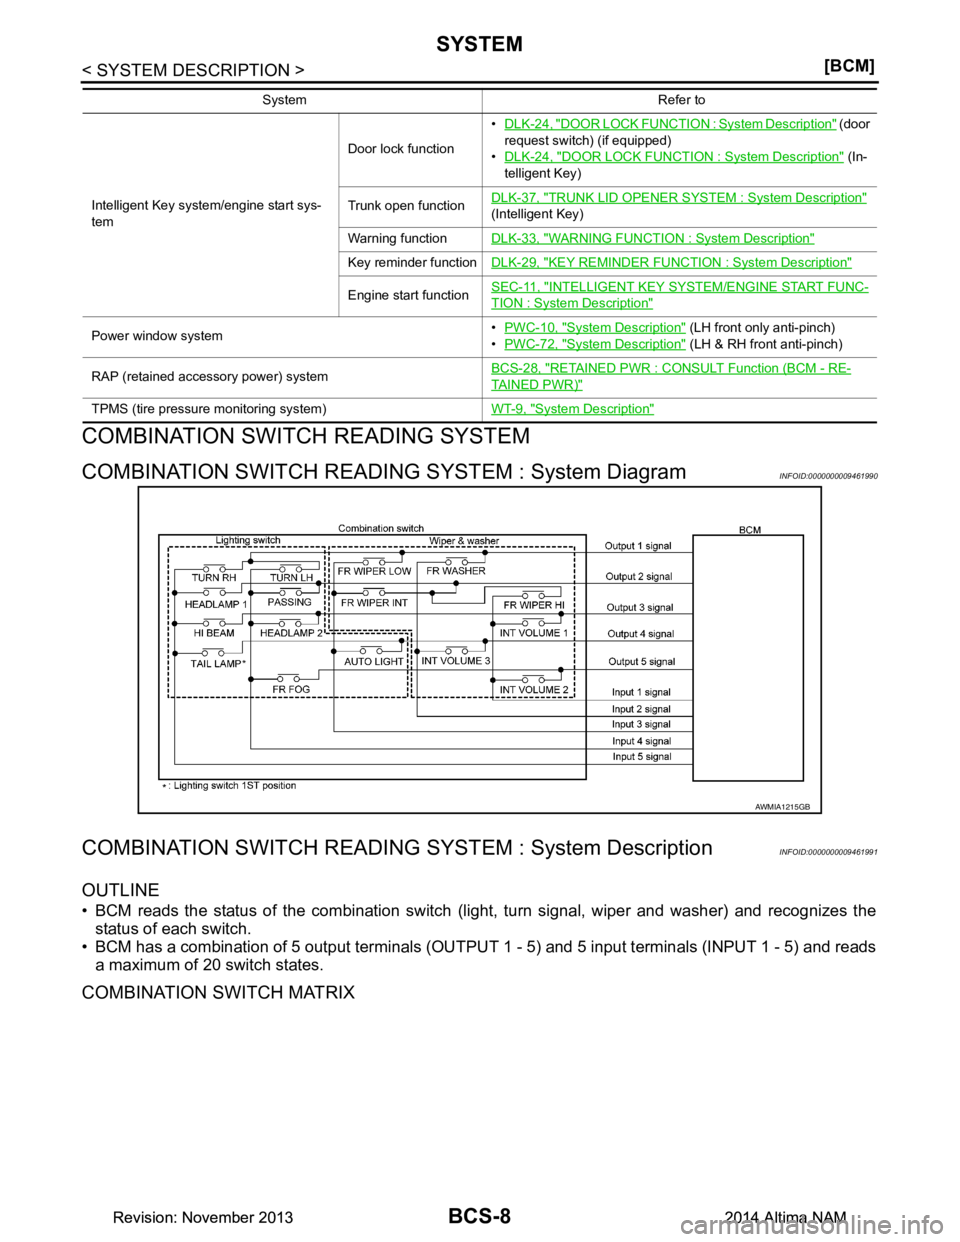 NISSAN TEANA 2014  Service Manual 
BCS-8
< SYSTEM DESCRIPTION >[BCM]
SYSTEM
COMBINATION SWITCH READING SYSTEM
COMBINATION SWITCH READING 
SYSTEM : System DiagramINFOID:0000000009461990
COMBINATION SWITCH READING SY STEM : System Descr